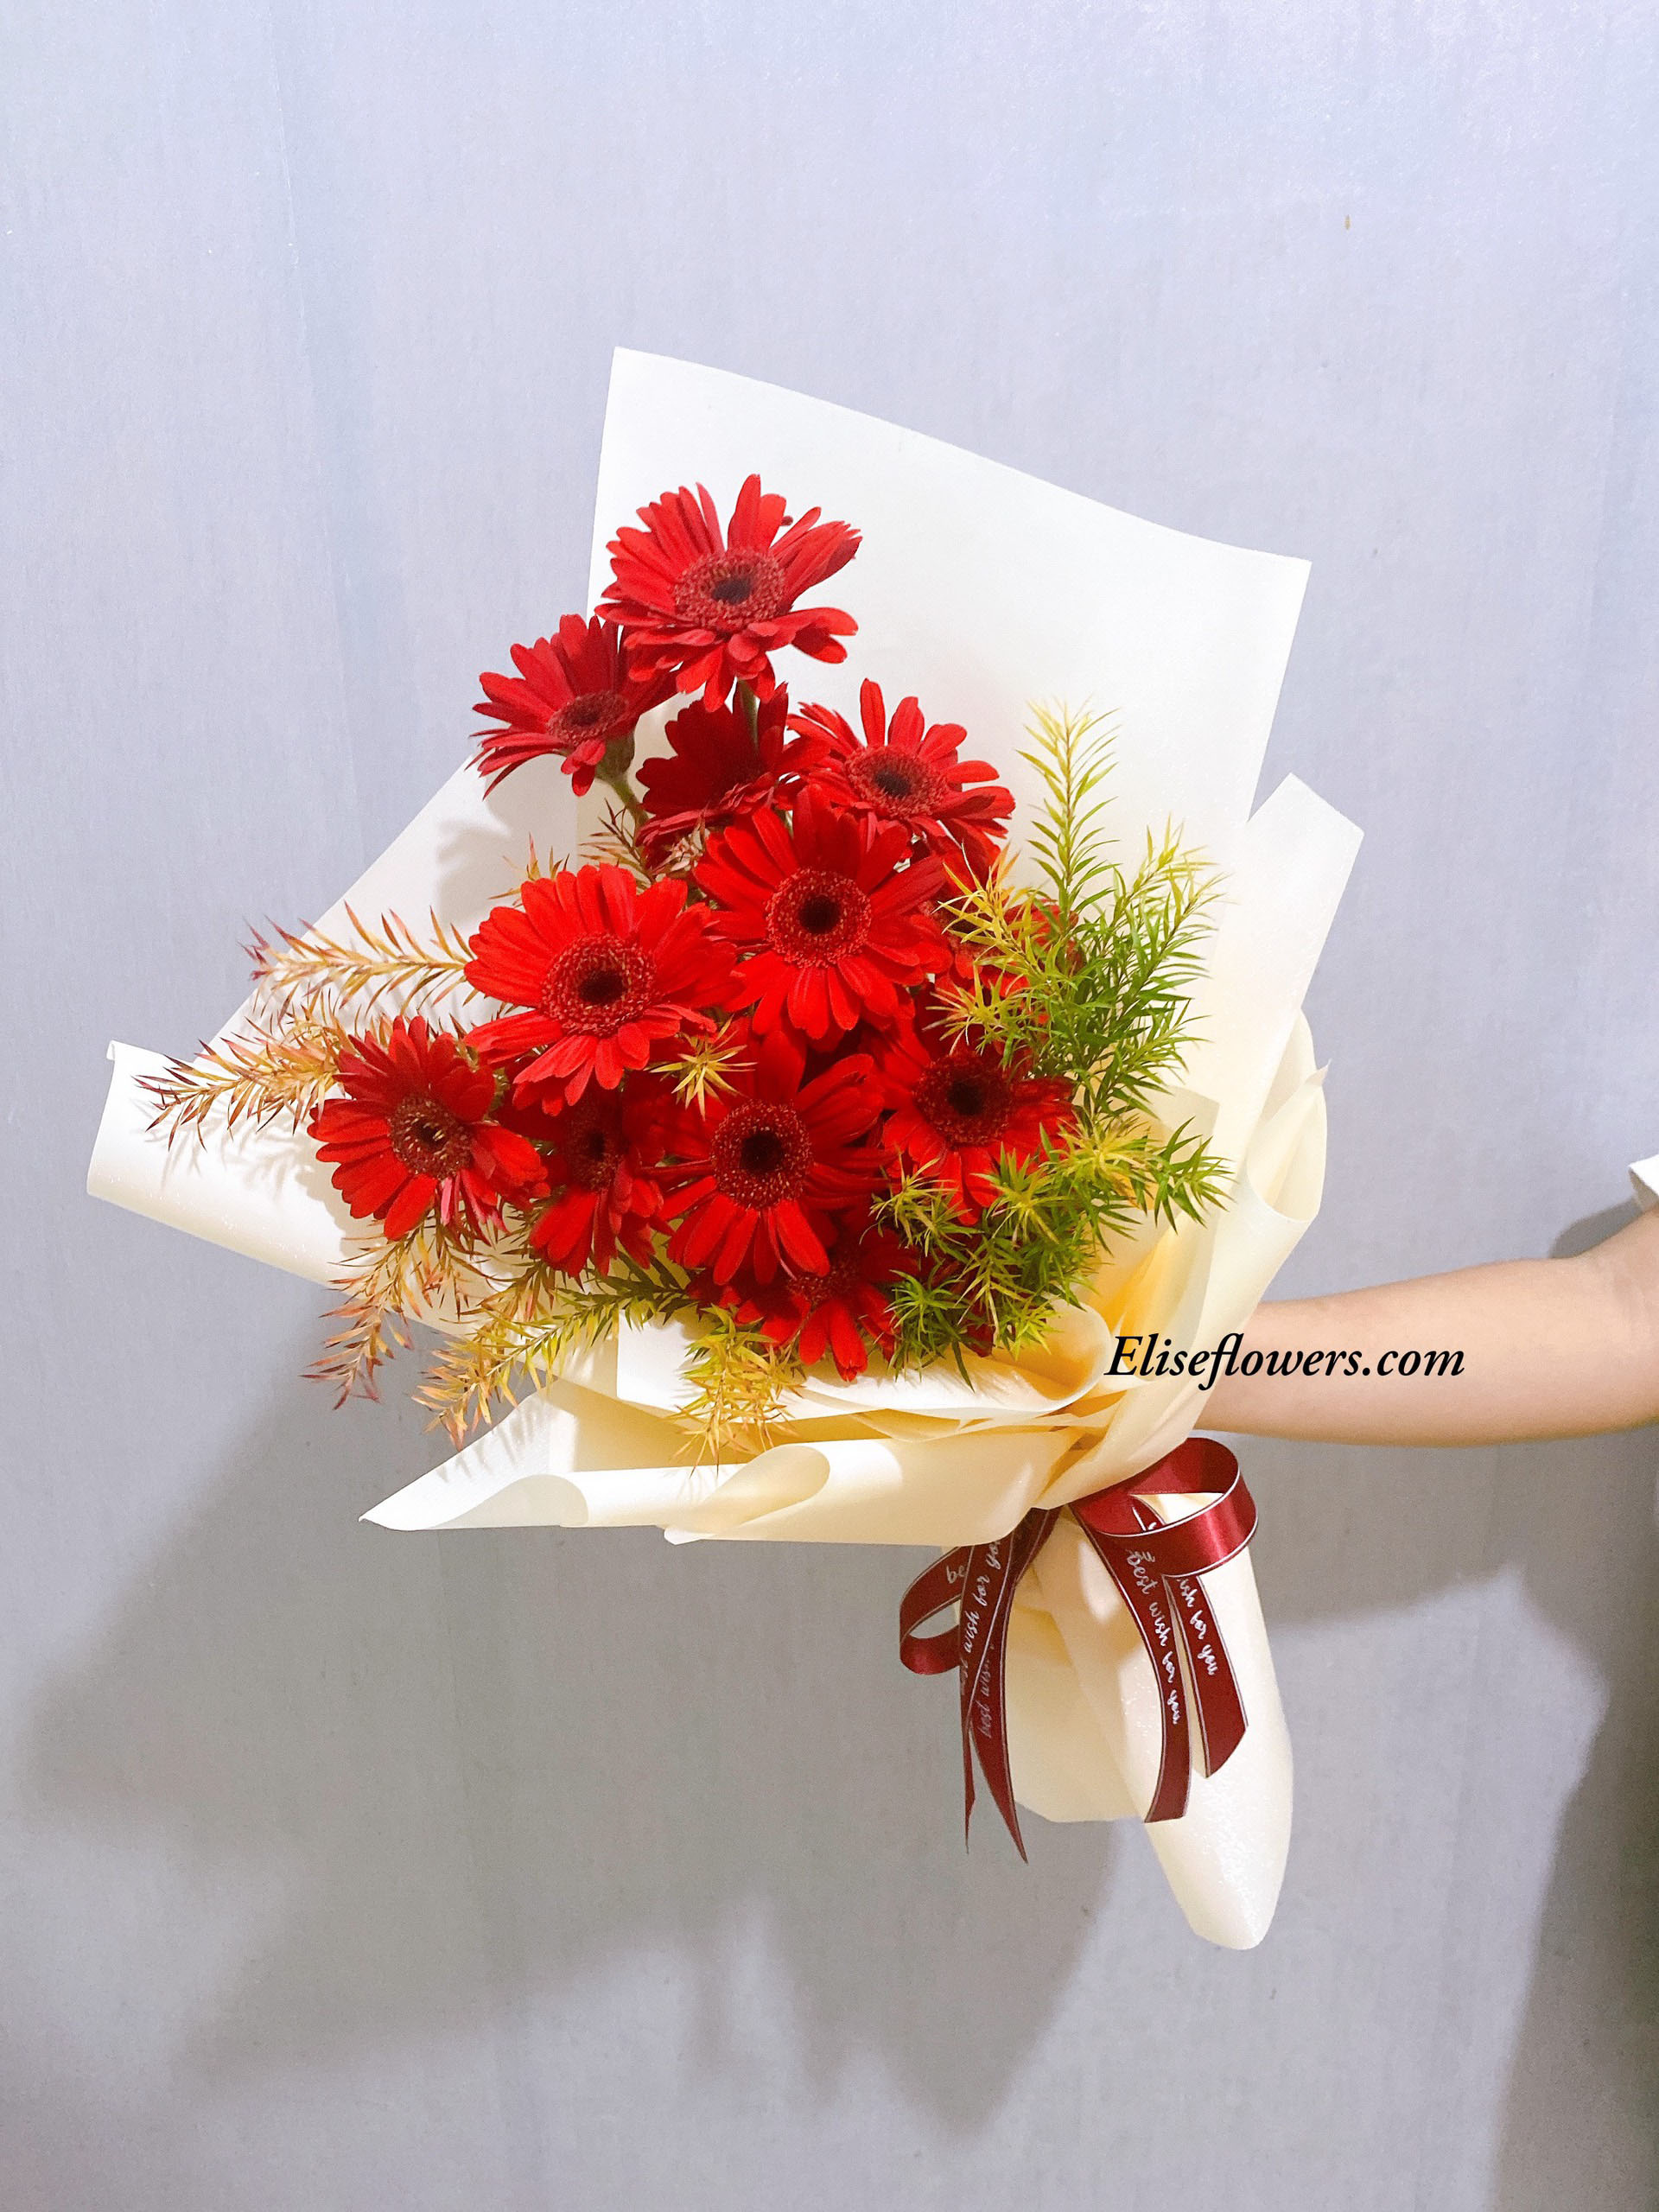 Sự độc đáo của sắc hoa Bó hoa đồng tiền đẹp nhất Làm quà tặng đặc biệt cho người thân